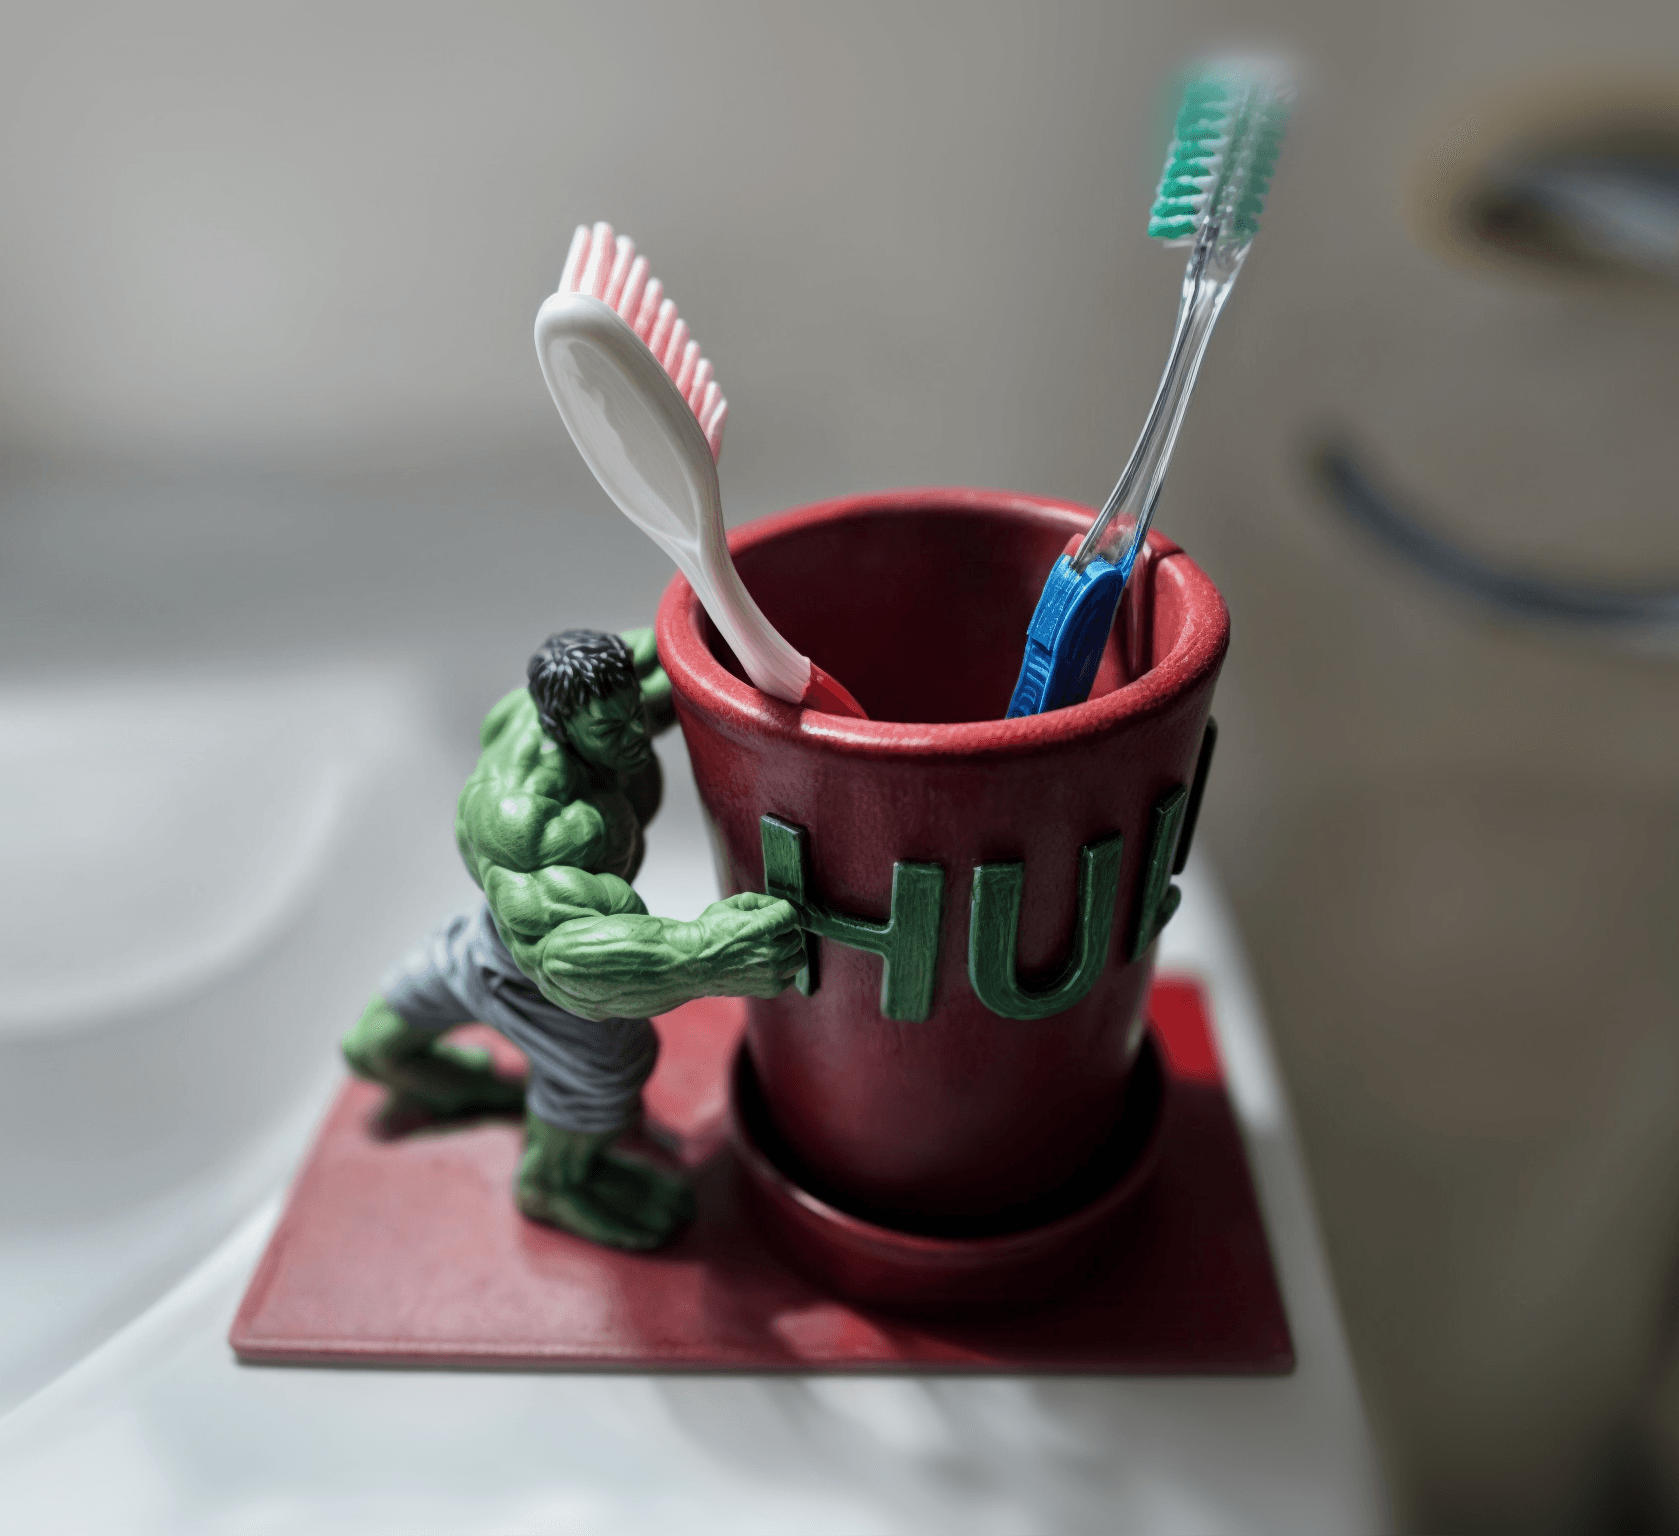 toothbrush holder Hulk 3d model